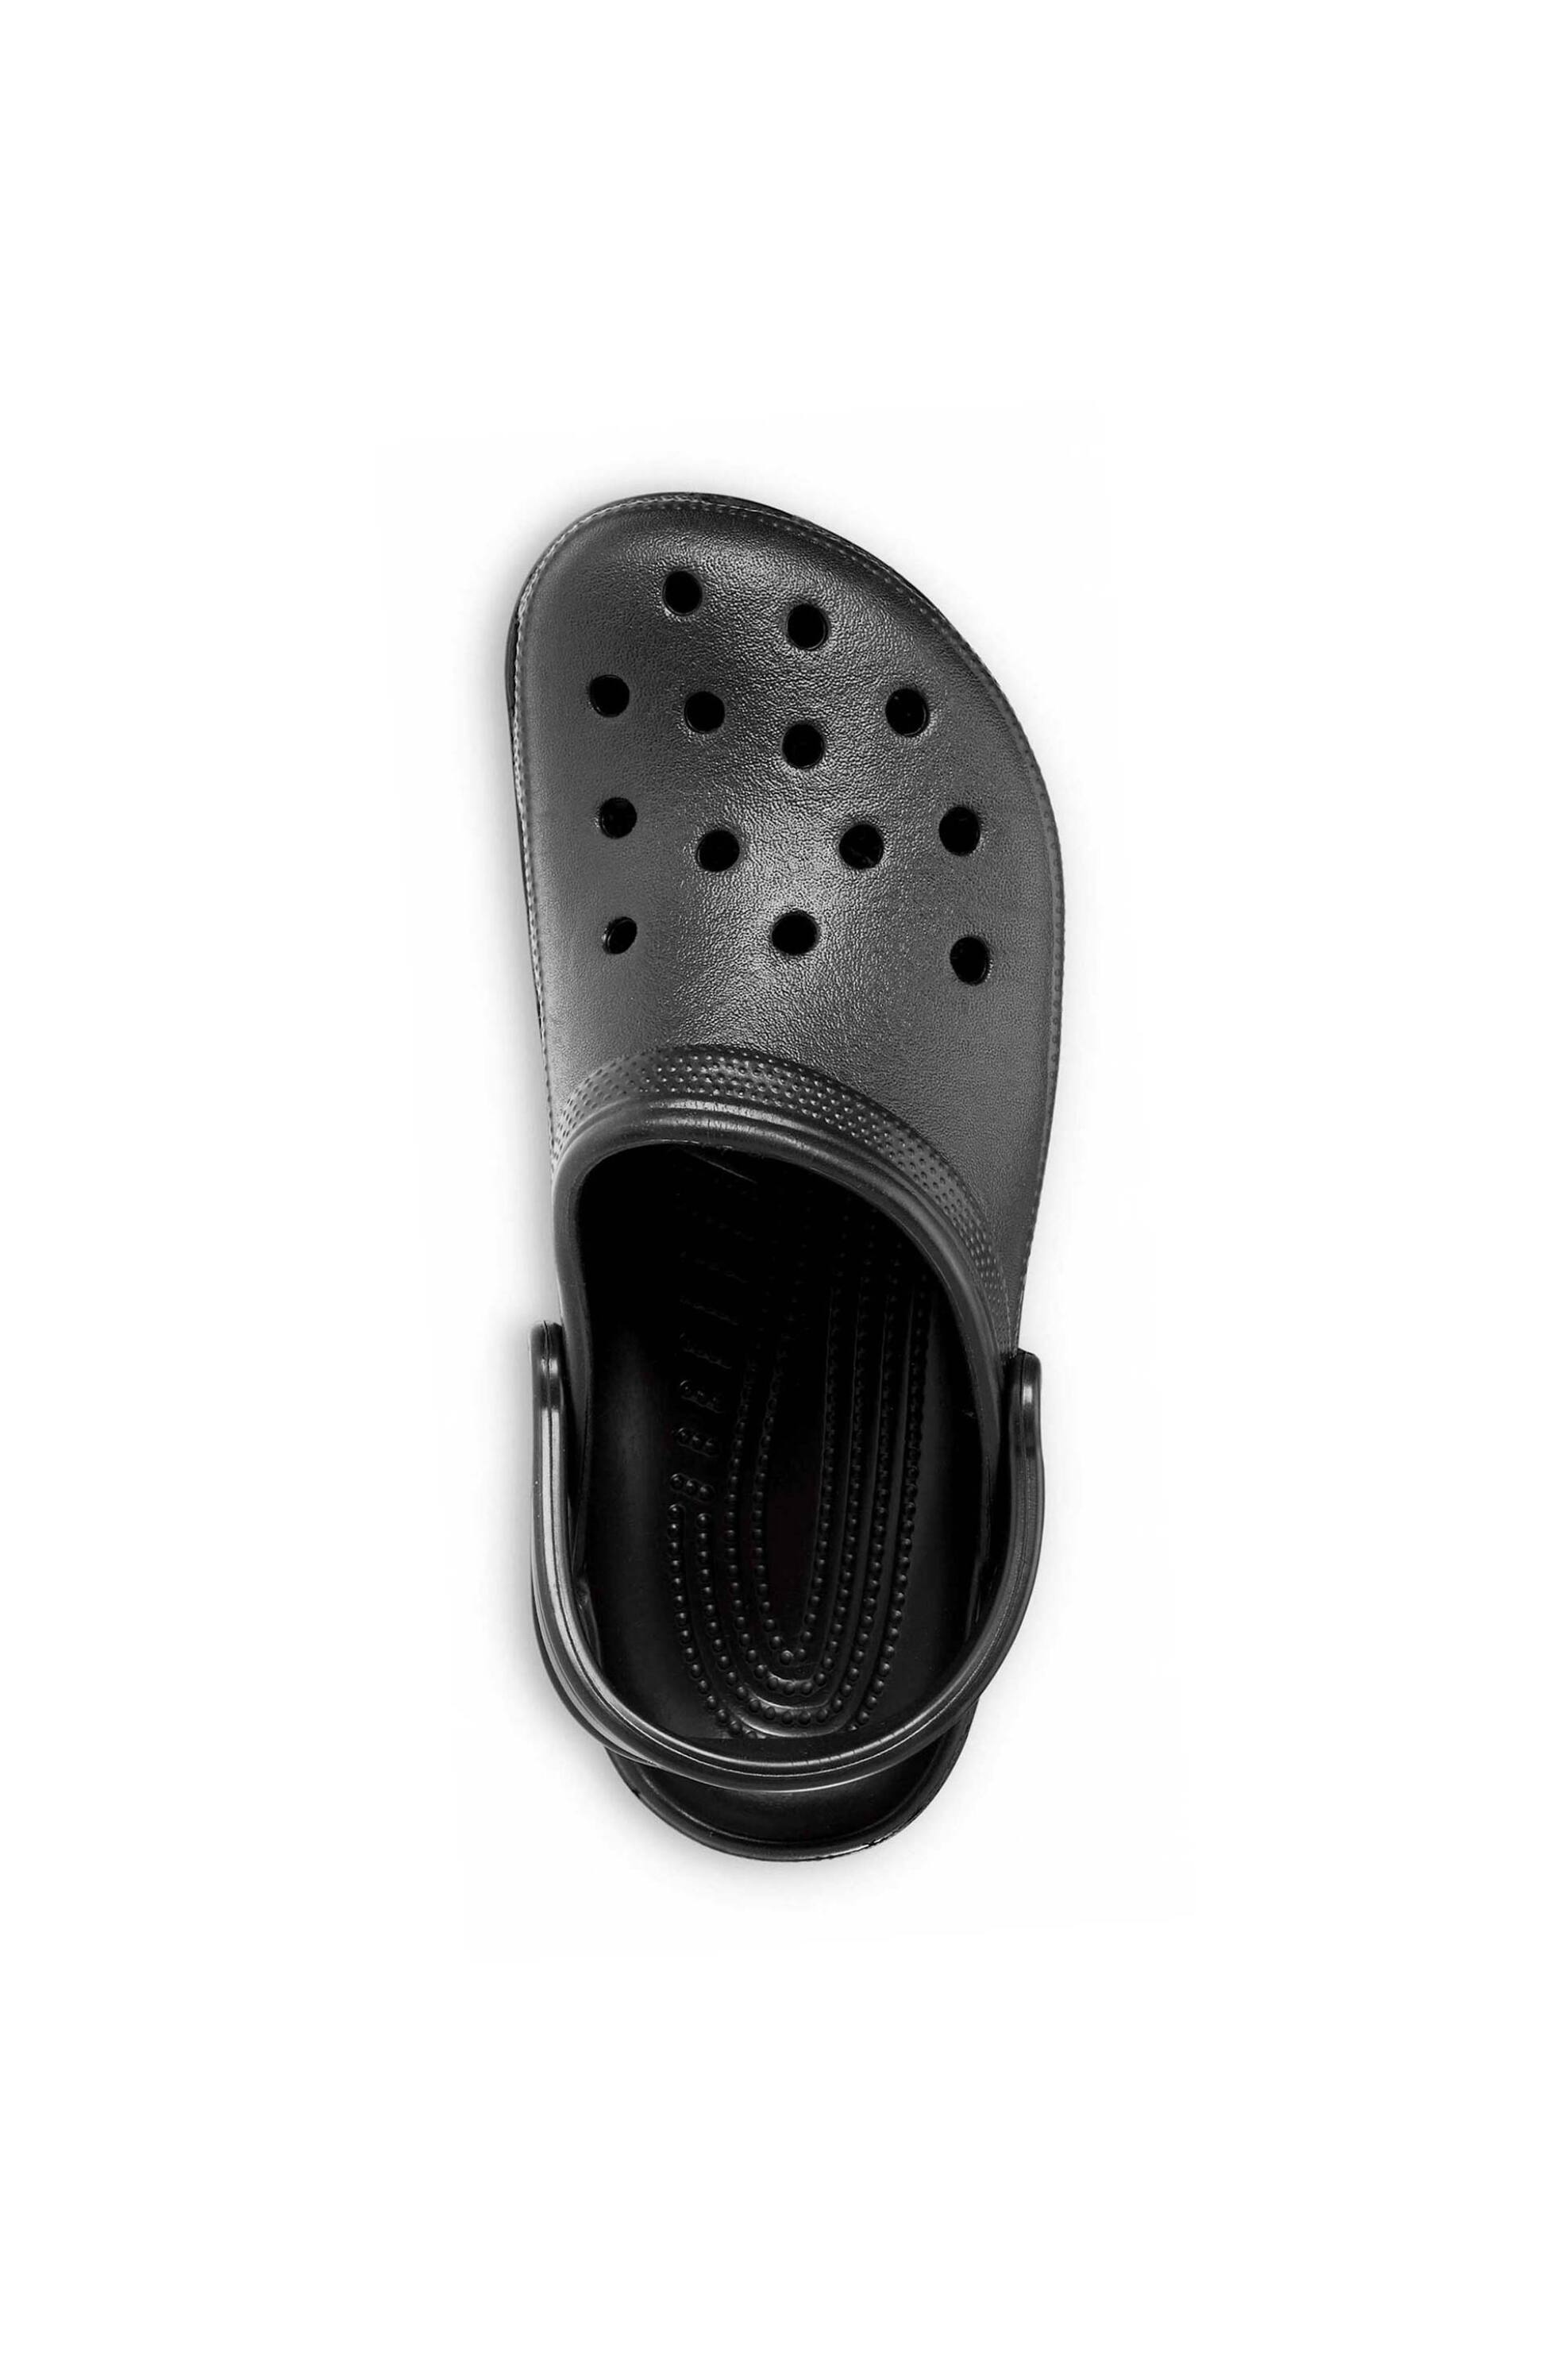 Ανδρική Μόδα > Ανδρικά Παπούτσια > Ανδρικές Παντόφλες & Σαγιονάρες Crocs unisex clogs μονόχρωμα με διάτρητο σχέδιο "Classic" - E61000 Μαύρο